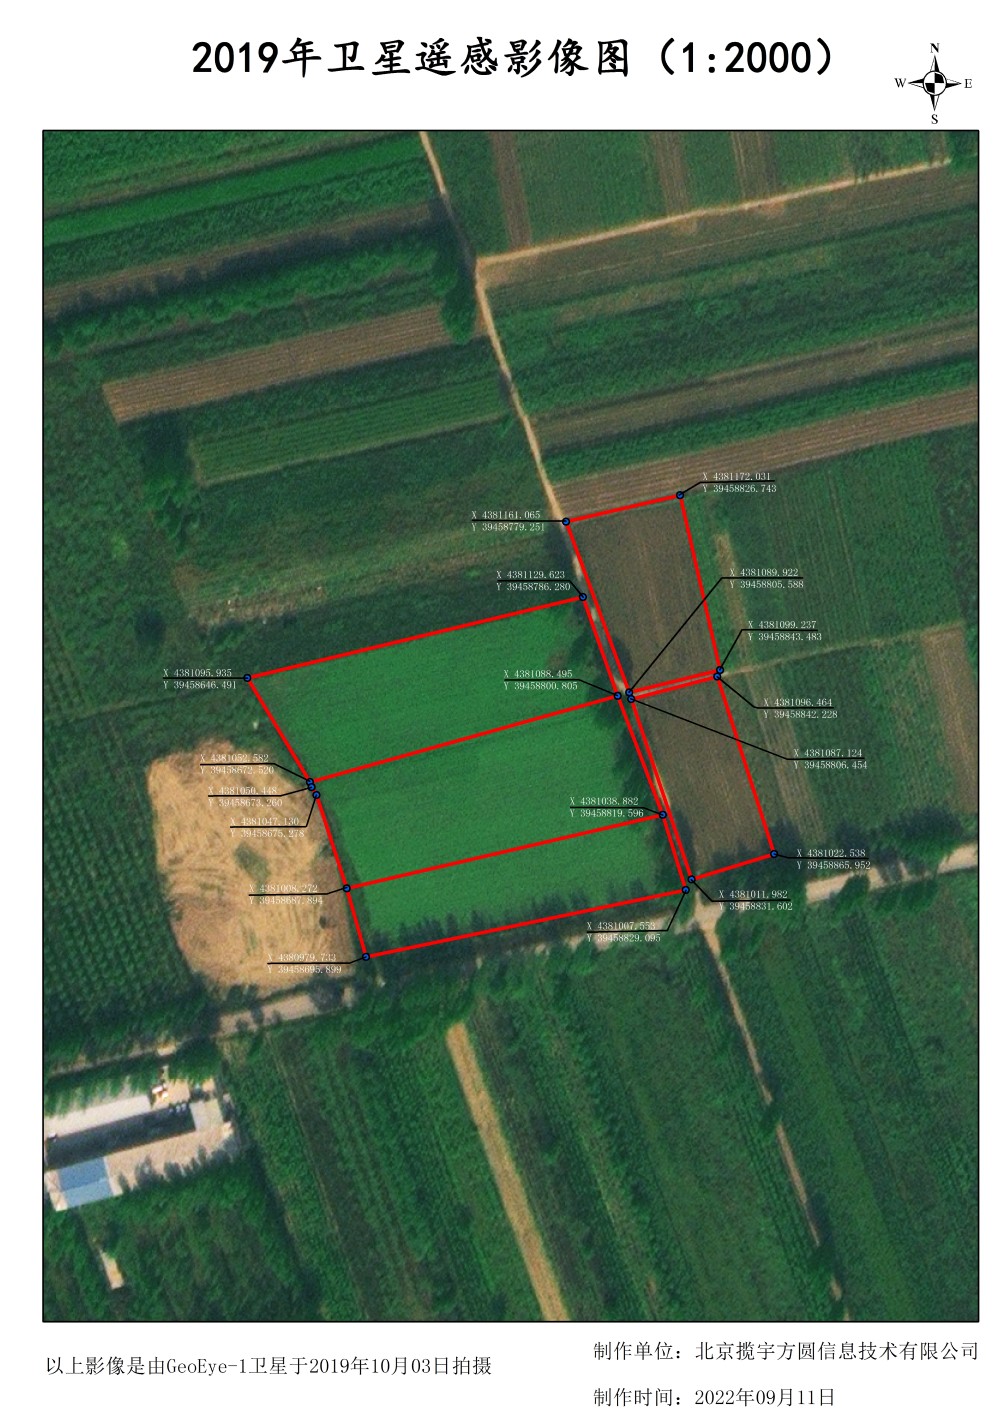 A4纸张样式的0.5米分辨率卫星影像的农场坐标标注样例图